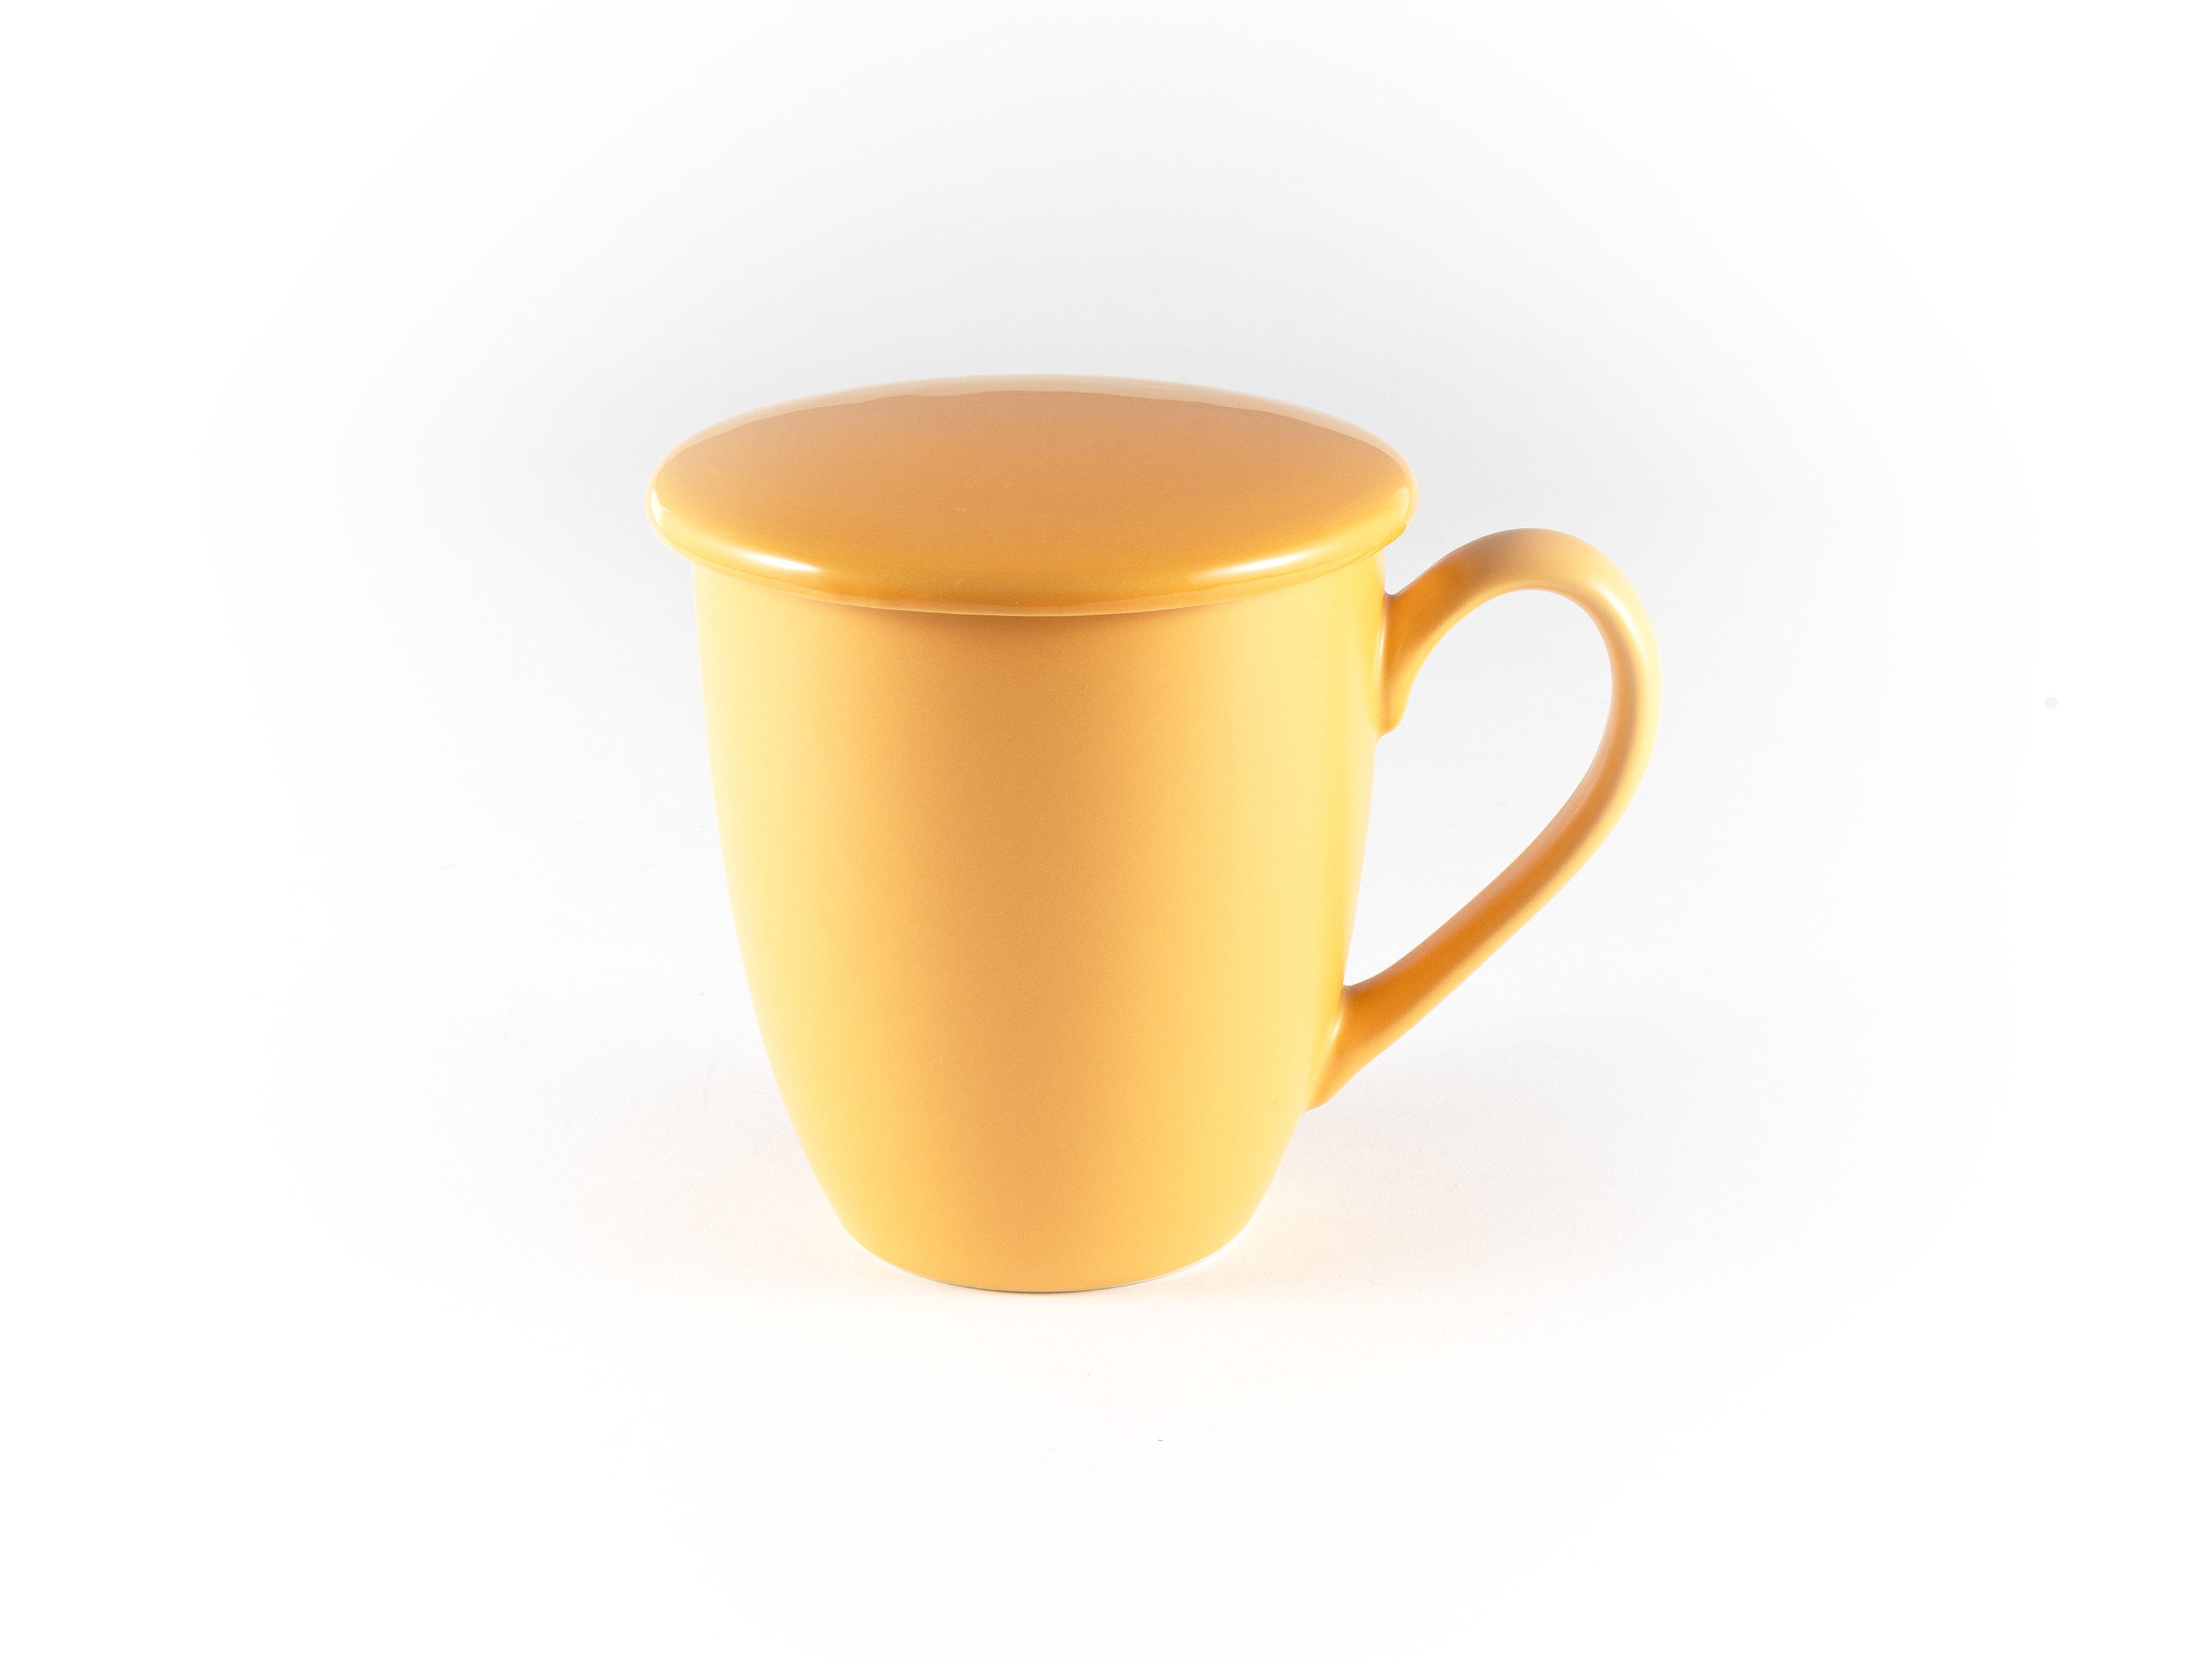 Deckel XXL Teetasse Orange mit Hanseküche Thermoeffekt, Keramik, Keramik Ultrafeinfilter, mit 650ml, – Dickwandige und Tasse Teebecher Sieb